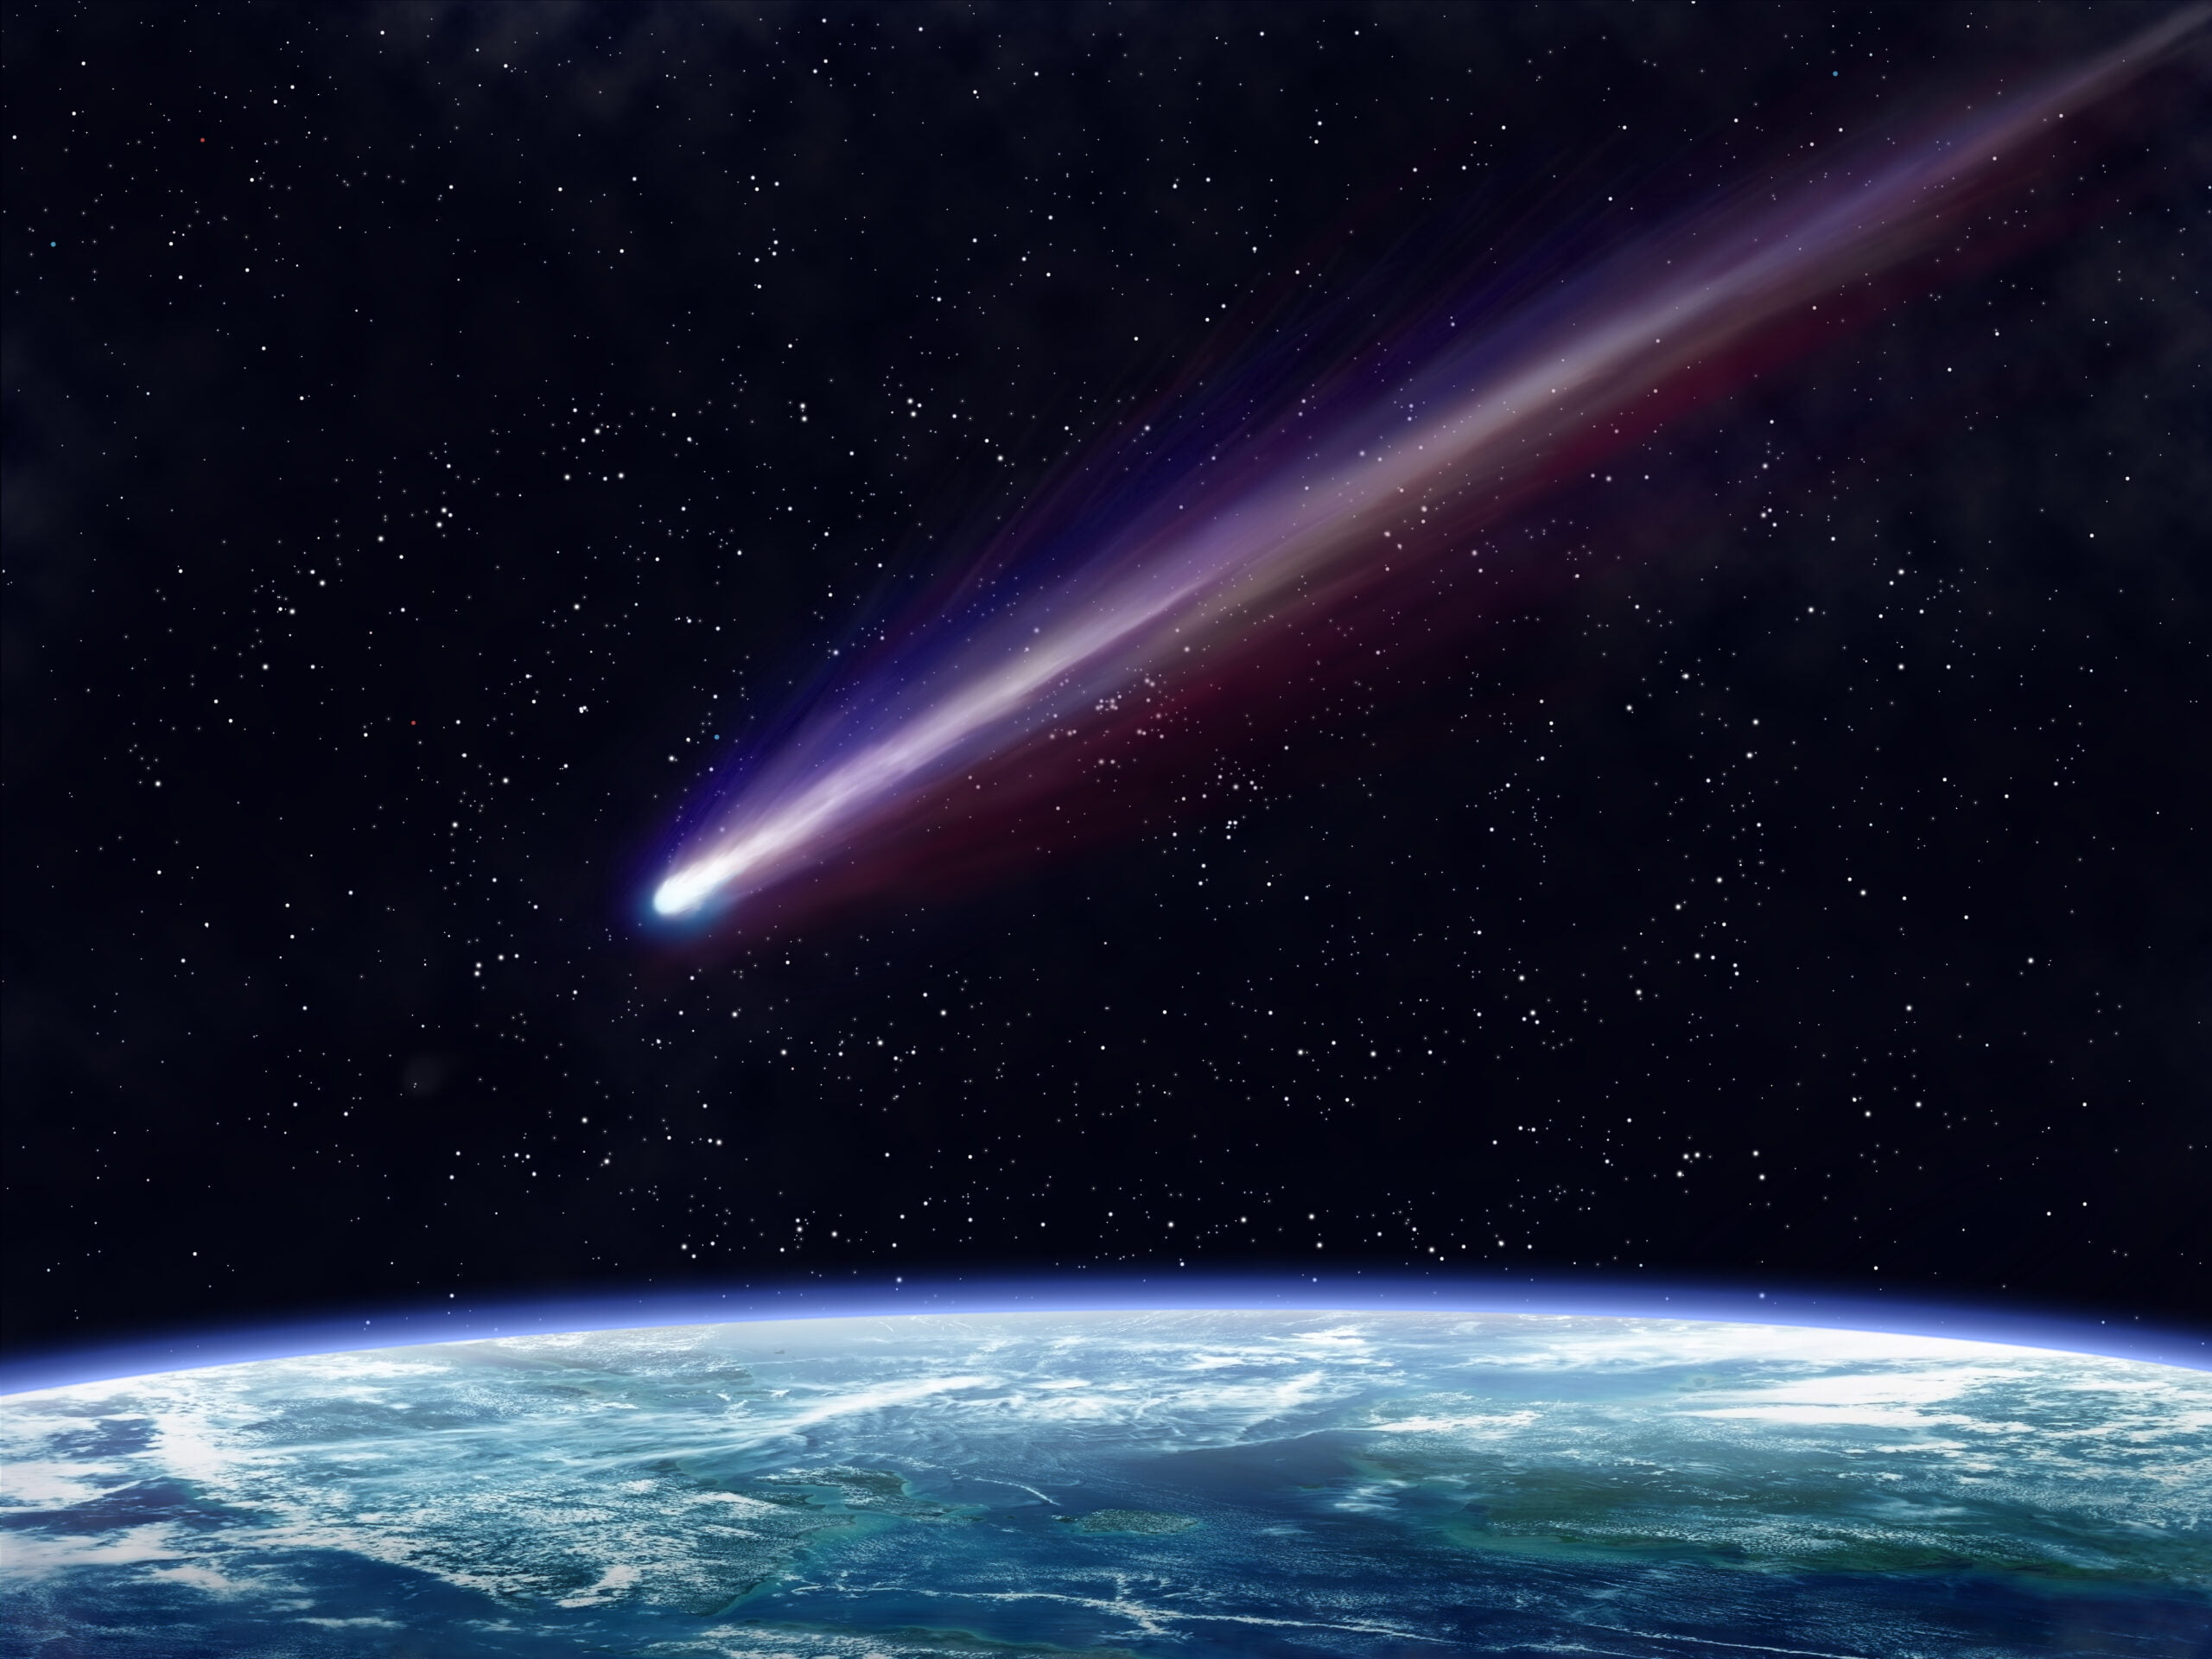 Kometa przelatująca przez ziemskie niebo nocą z wyraźnie widocznymi śladami pyłu i gazów zostawionymi na tle gwiaździstym nad błękitnym krawędzią Ziemi.